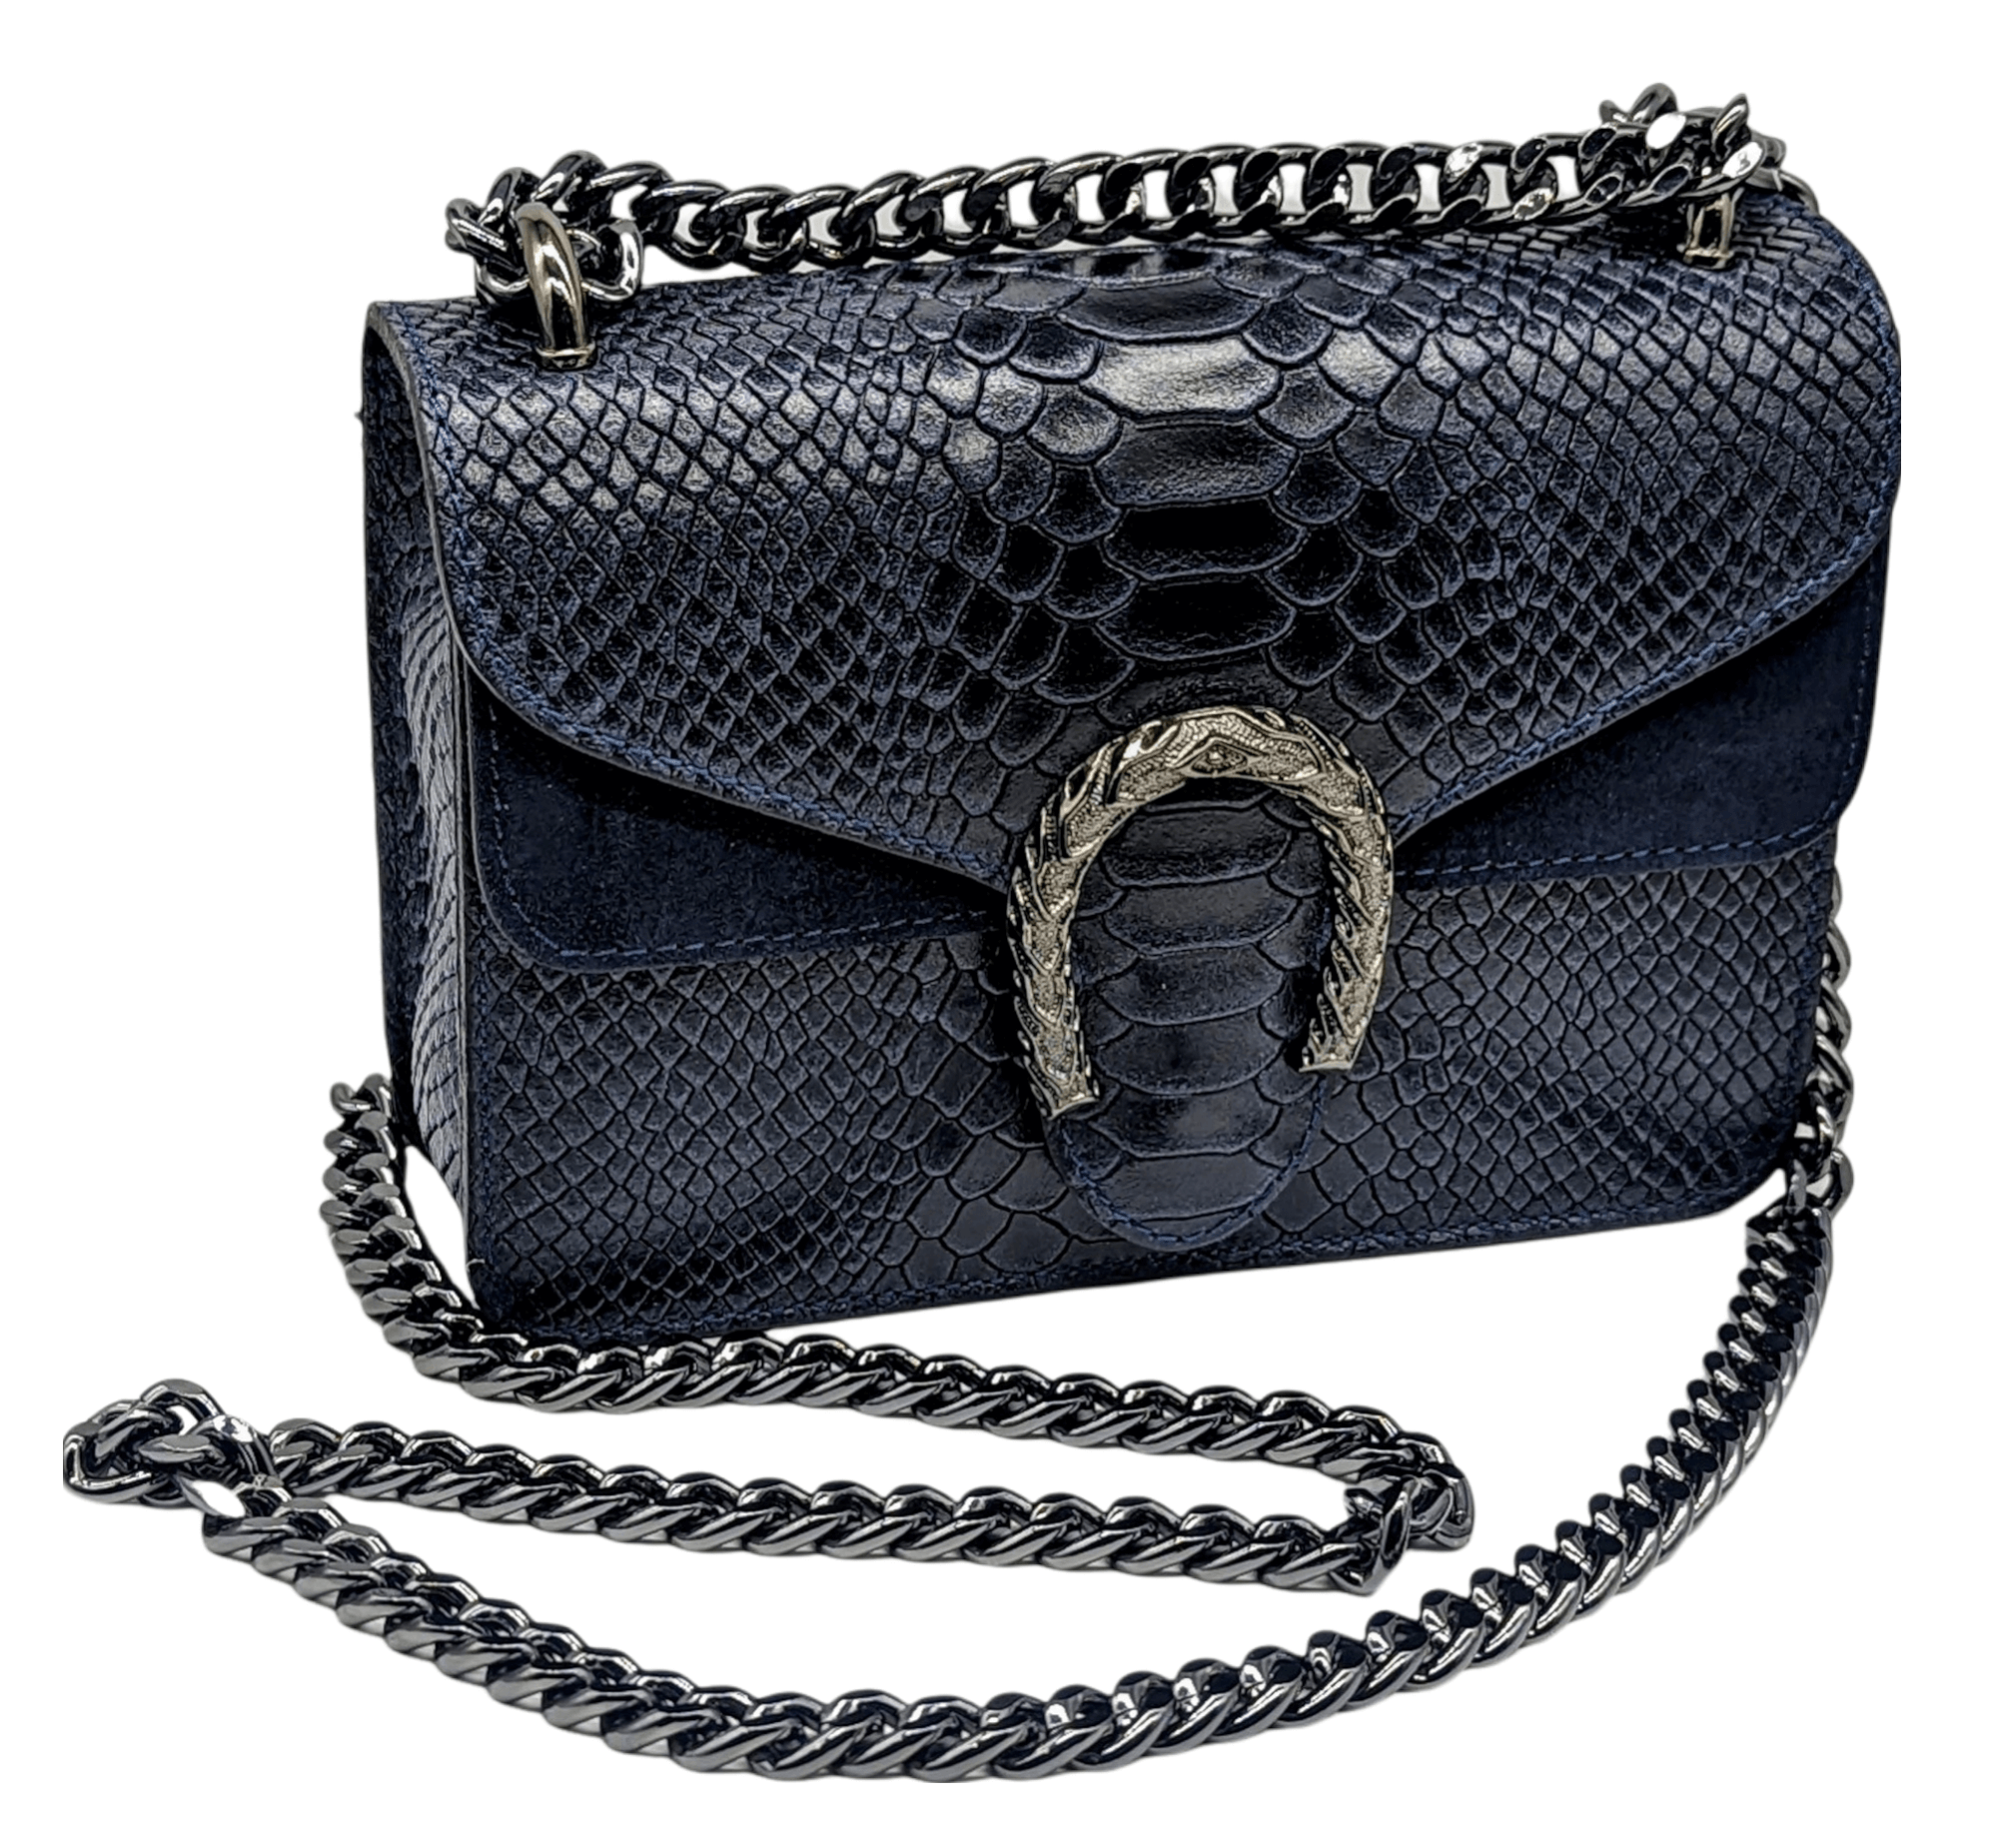 Italian Designer Leather Crossbody Bag with Horseshoe - Swolit Camilla Snake- Navy